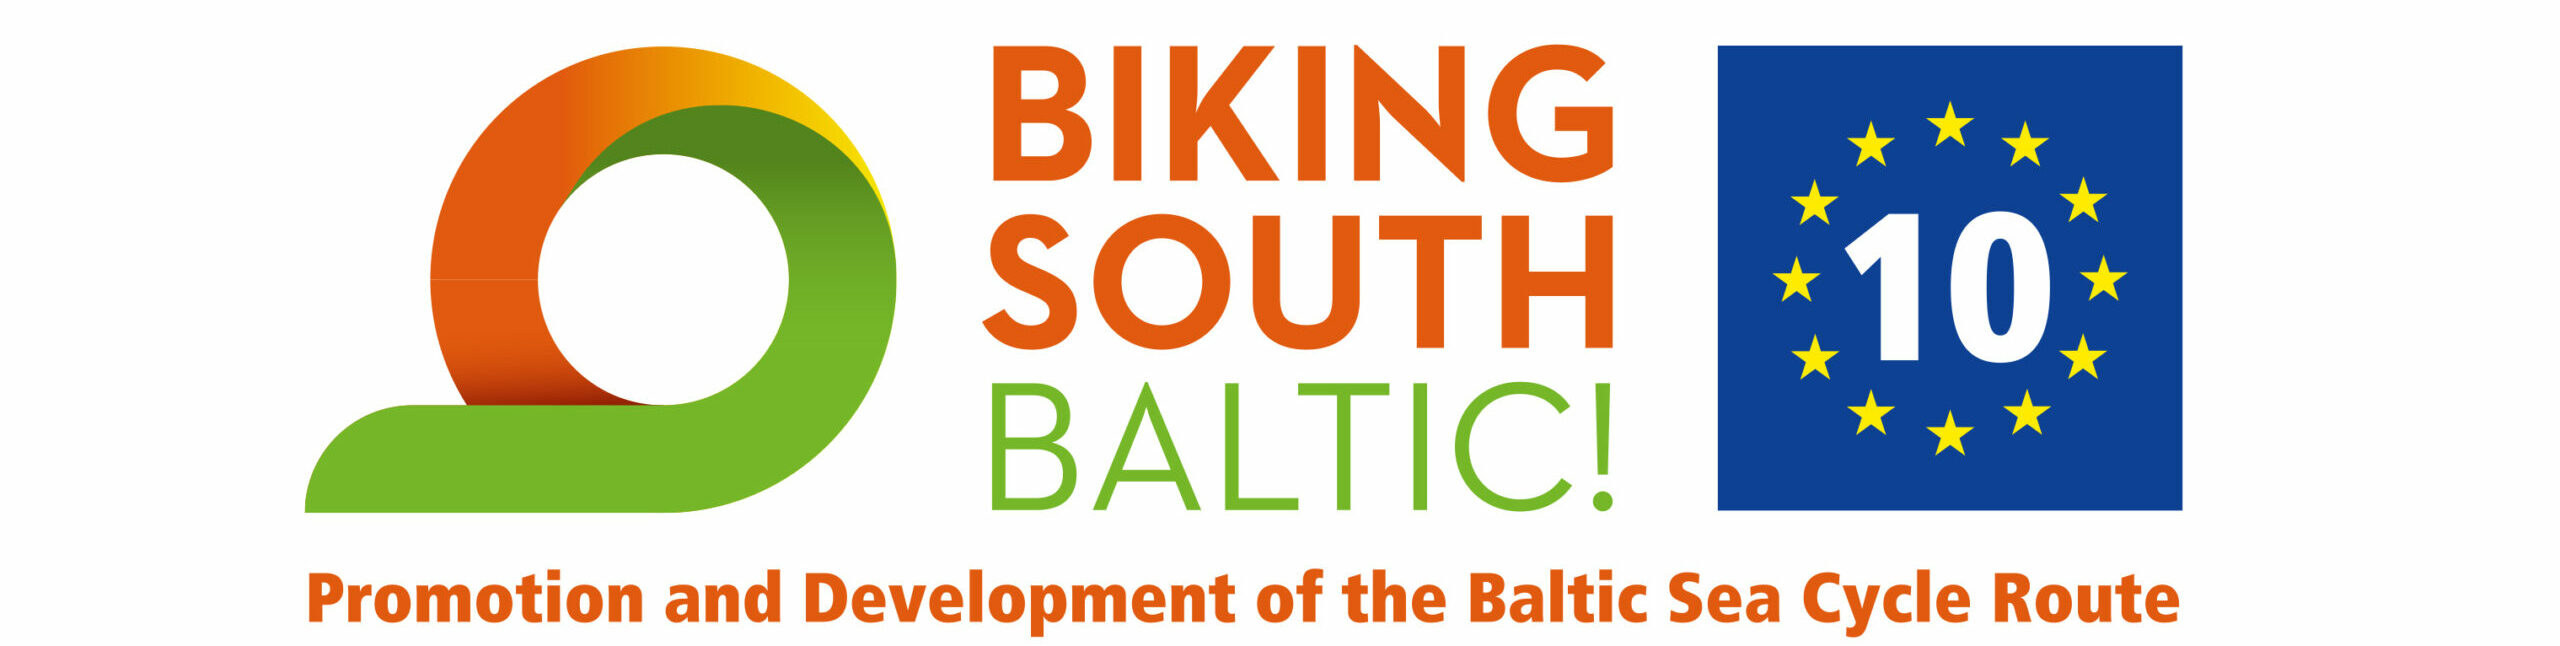 Zapytanie ofertowe w projekcie Biking South Baltic! / Interreg South Baltic